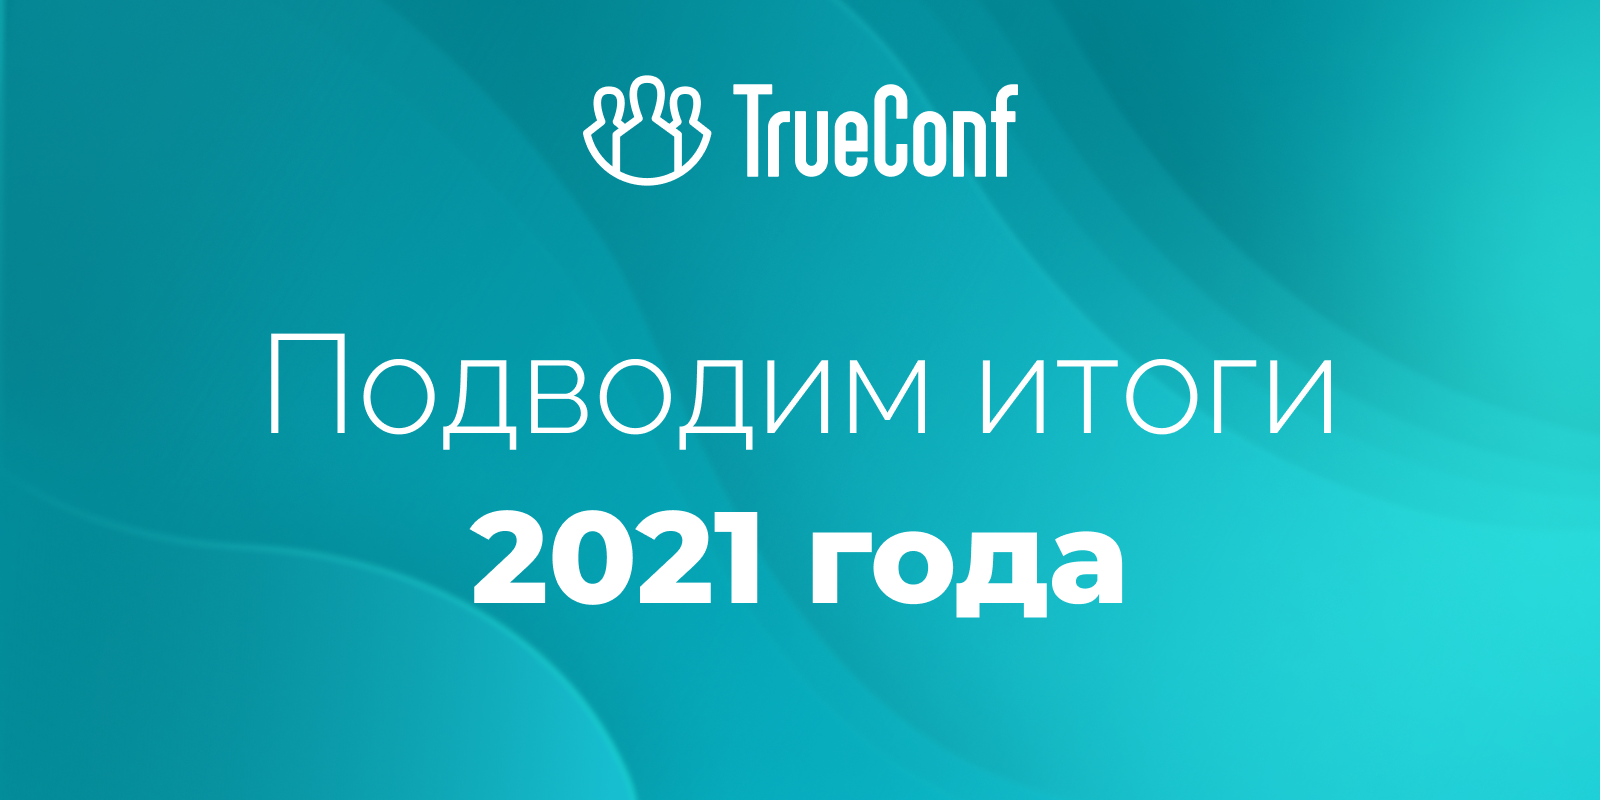 TrueConf в 2021-м году